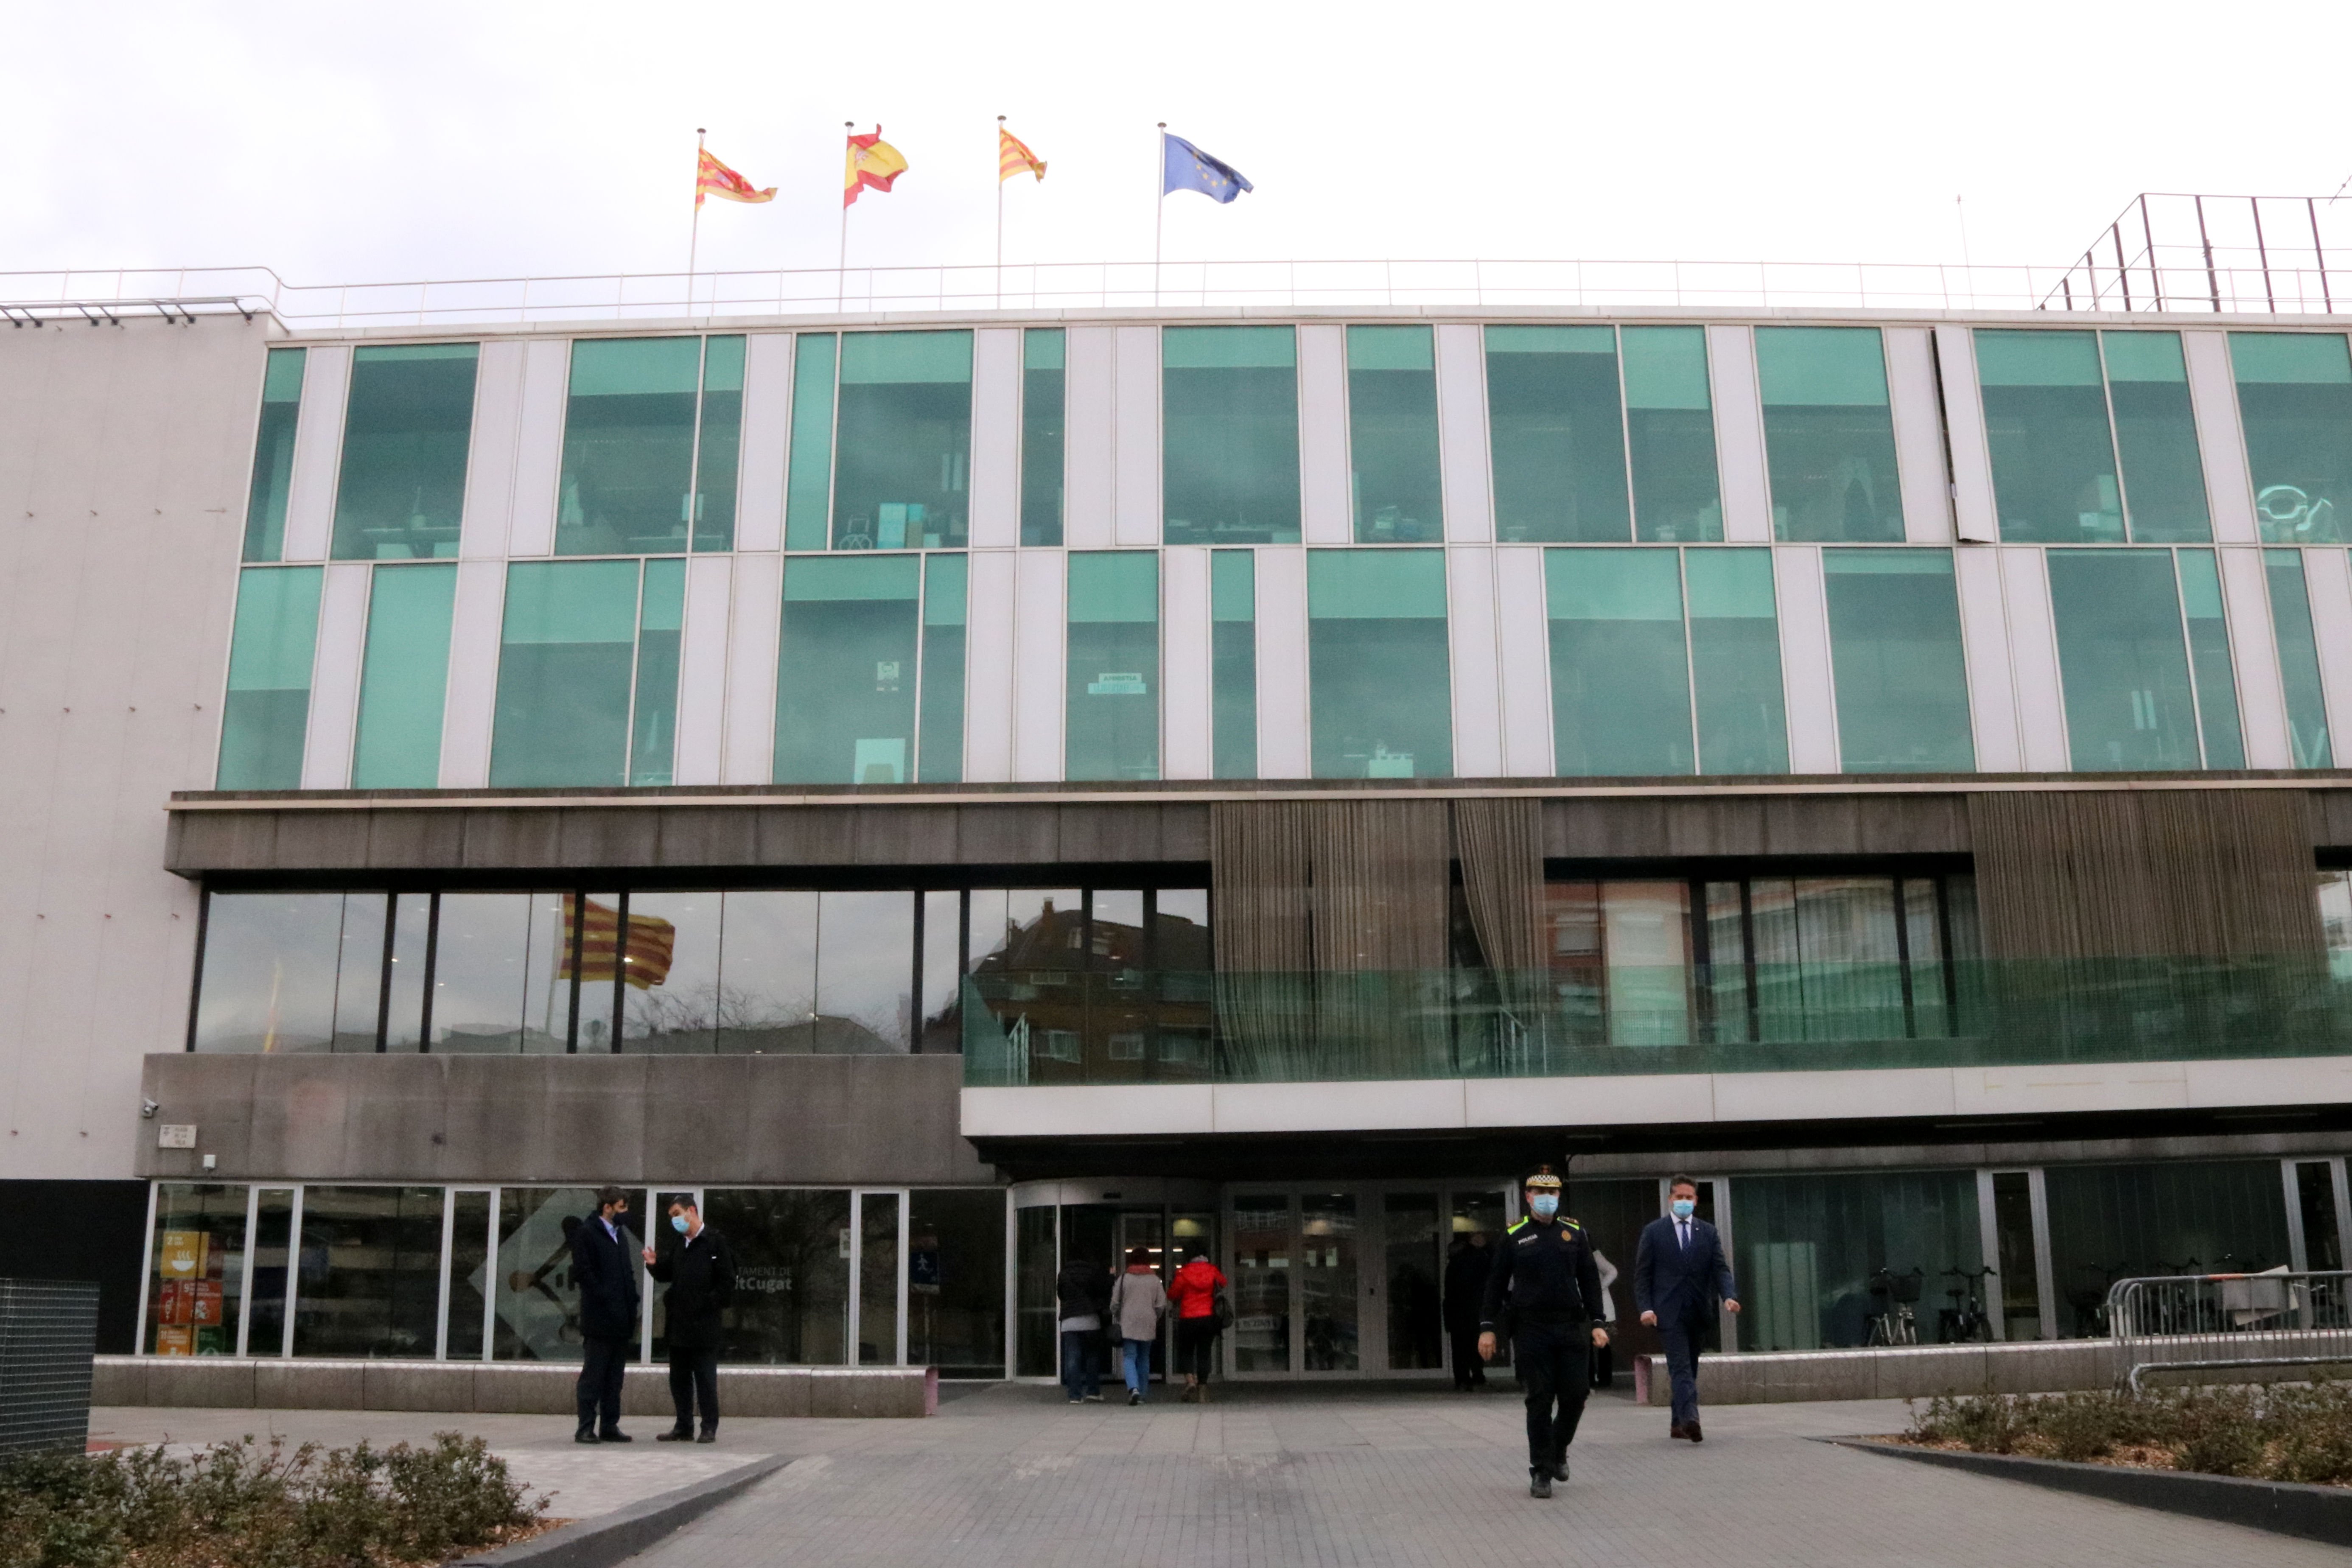 Ingla y la multa: "No hay símbolos en la fachada del ayuntamiento de Sant Cugat"